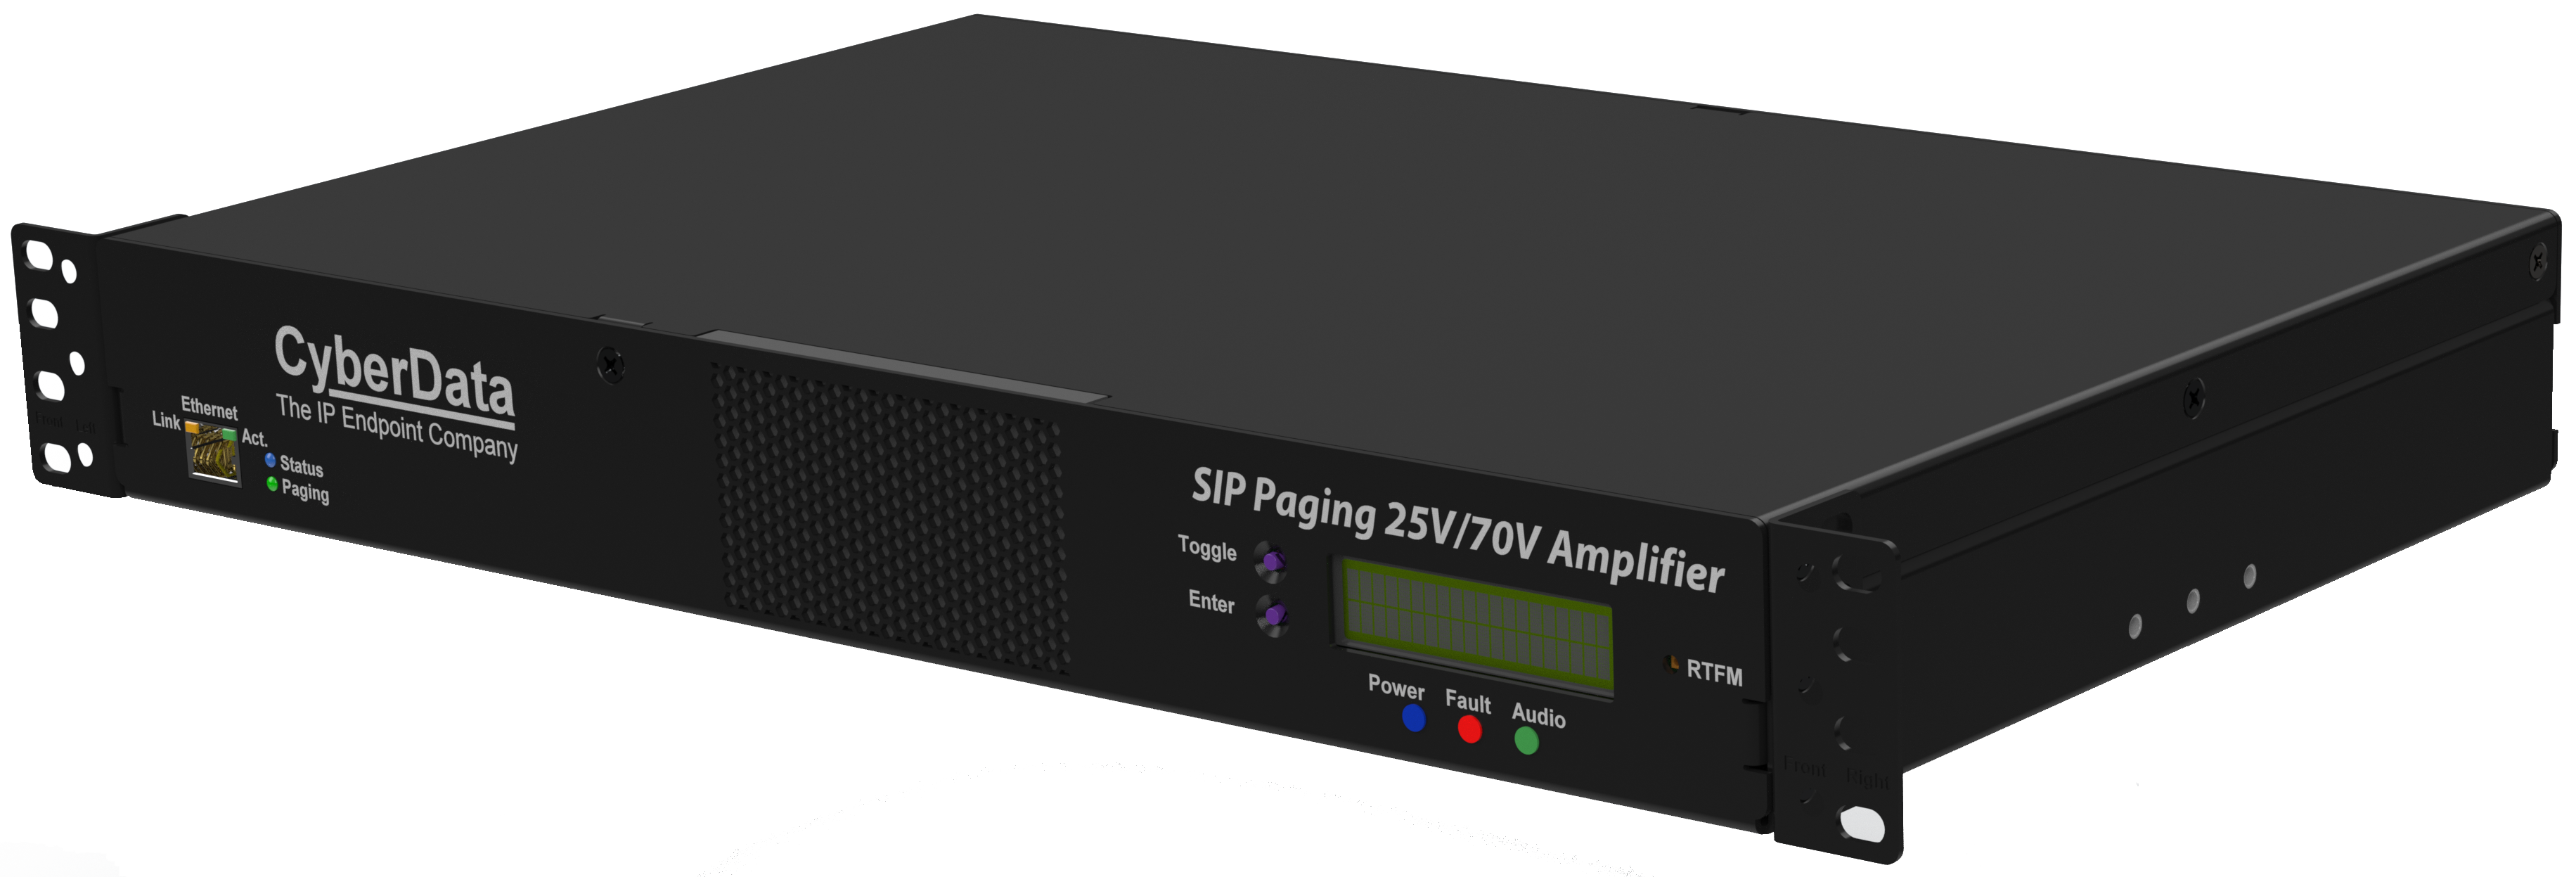 011579 SIP Paging 25V/70V Amplifier